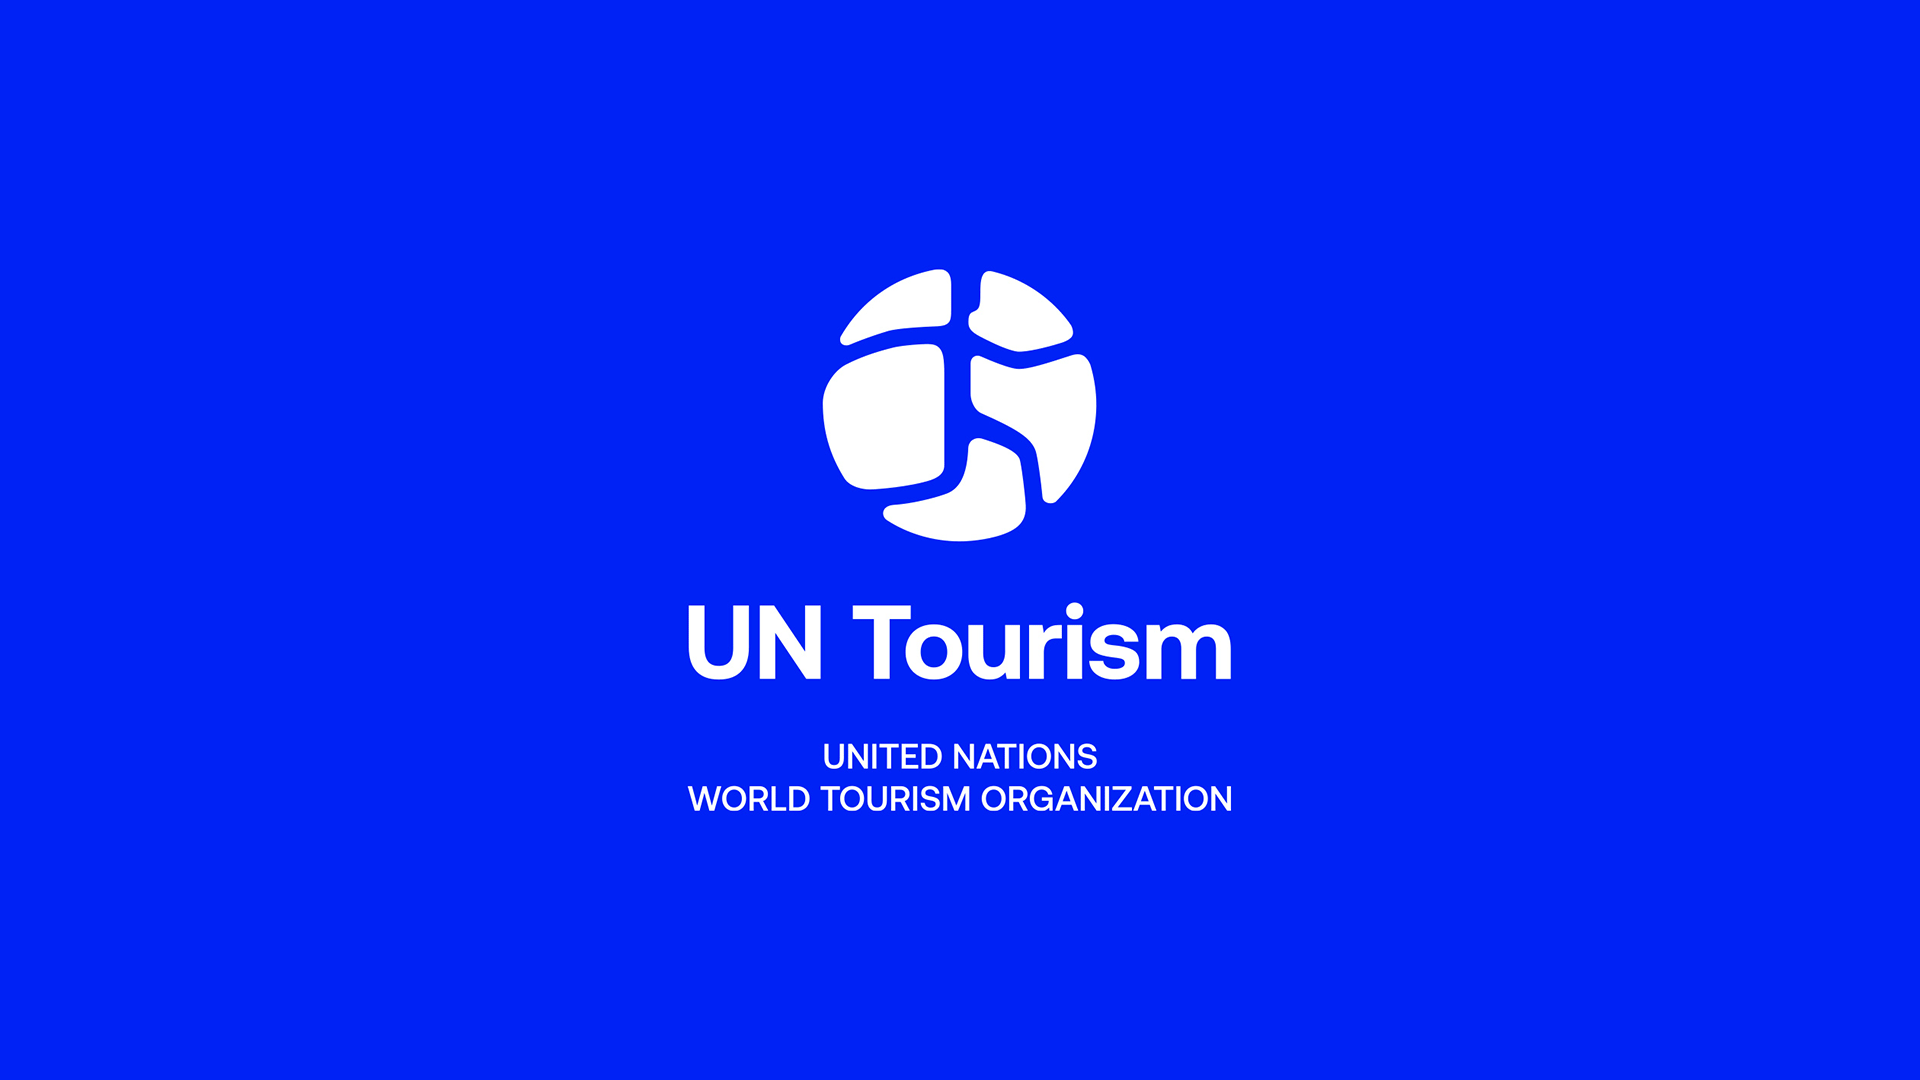 世界旅游组织推出全新品牌标志国内专业vi设计公司分享